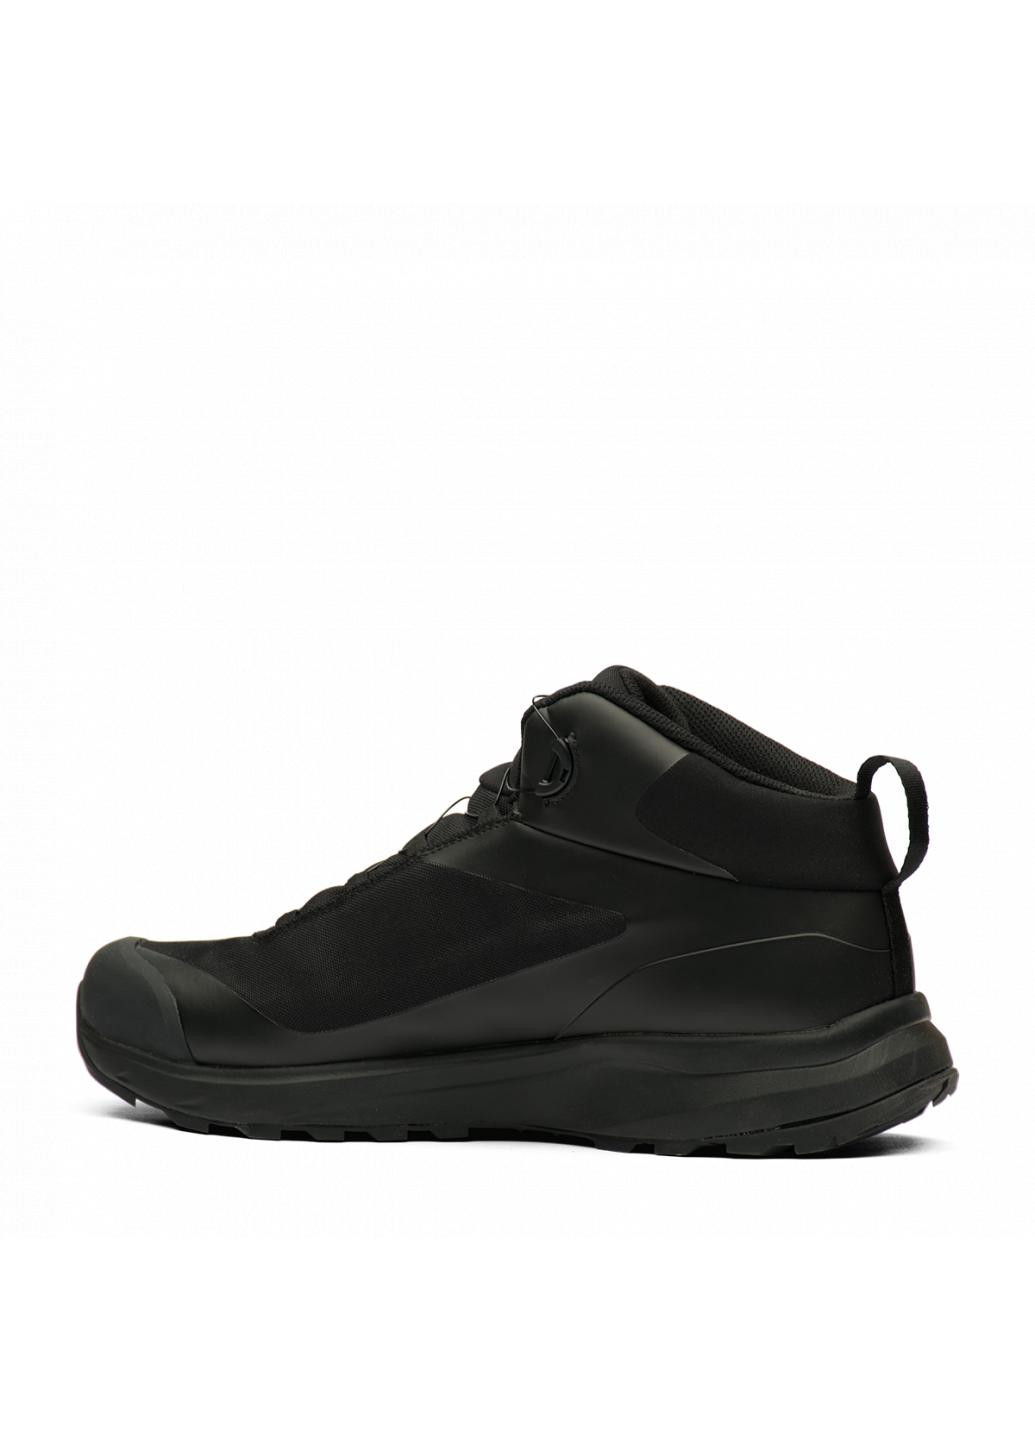 Черные зимние ботинки мужские 230969a1 Humtto